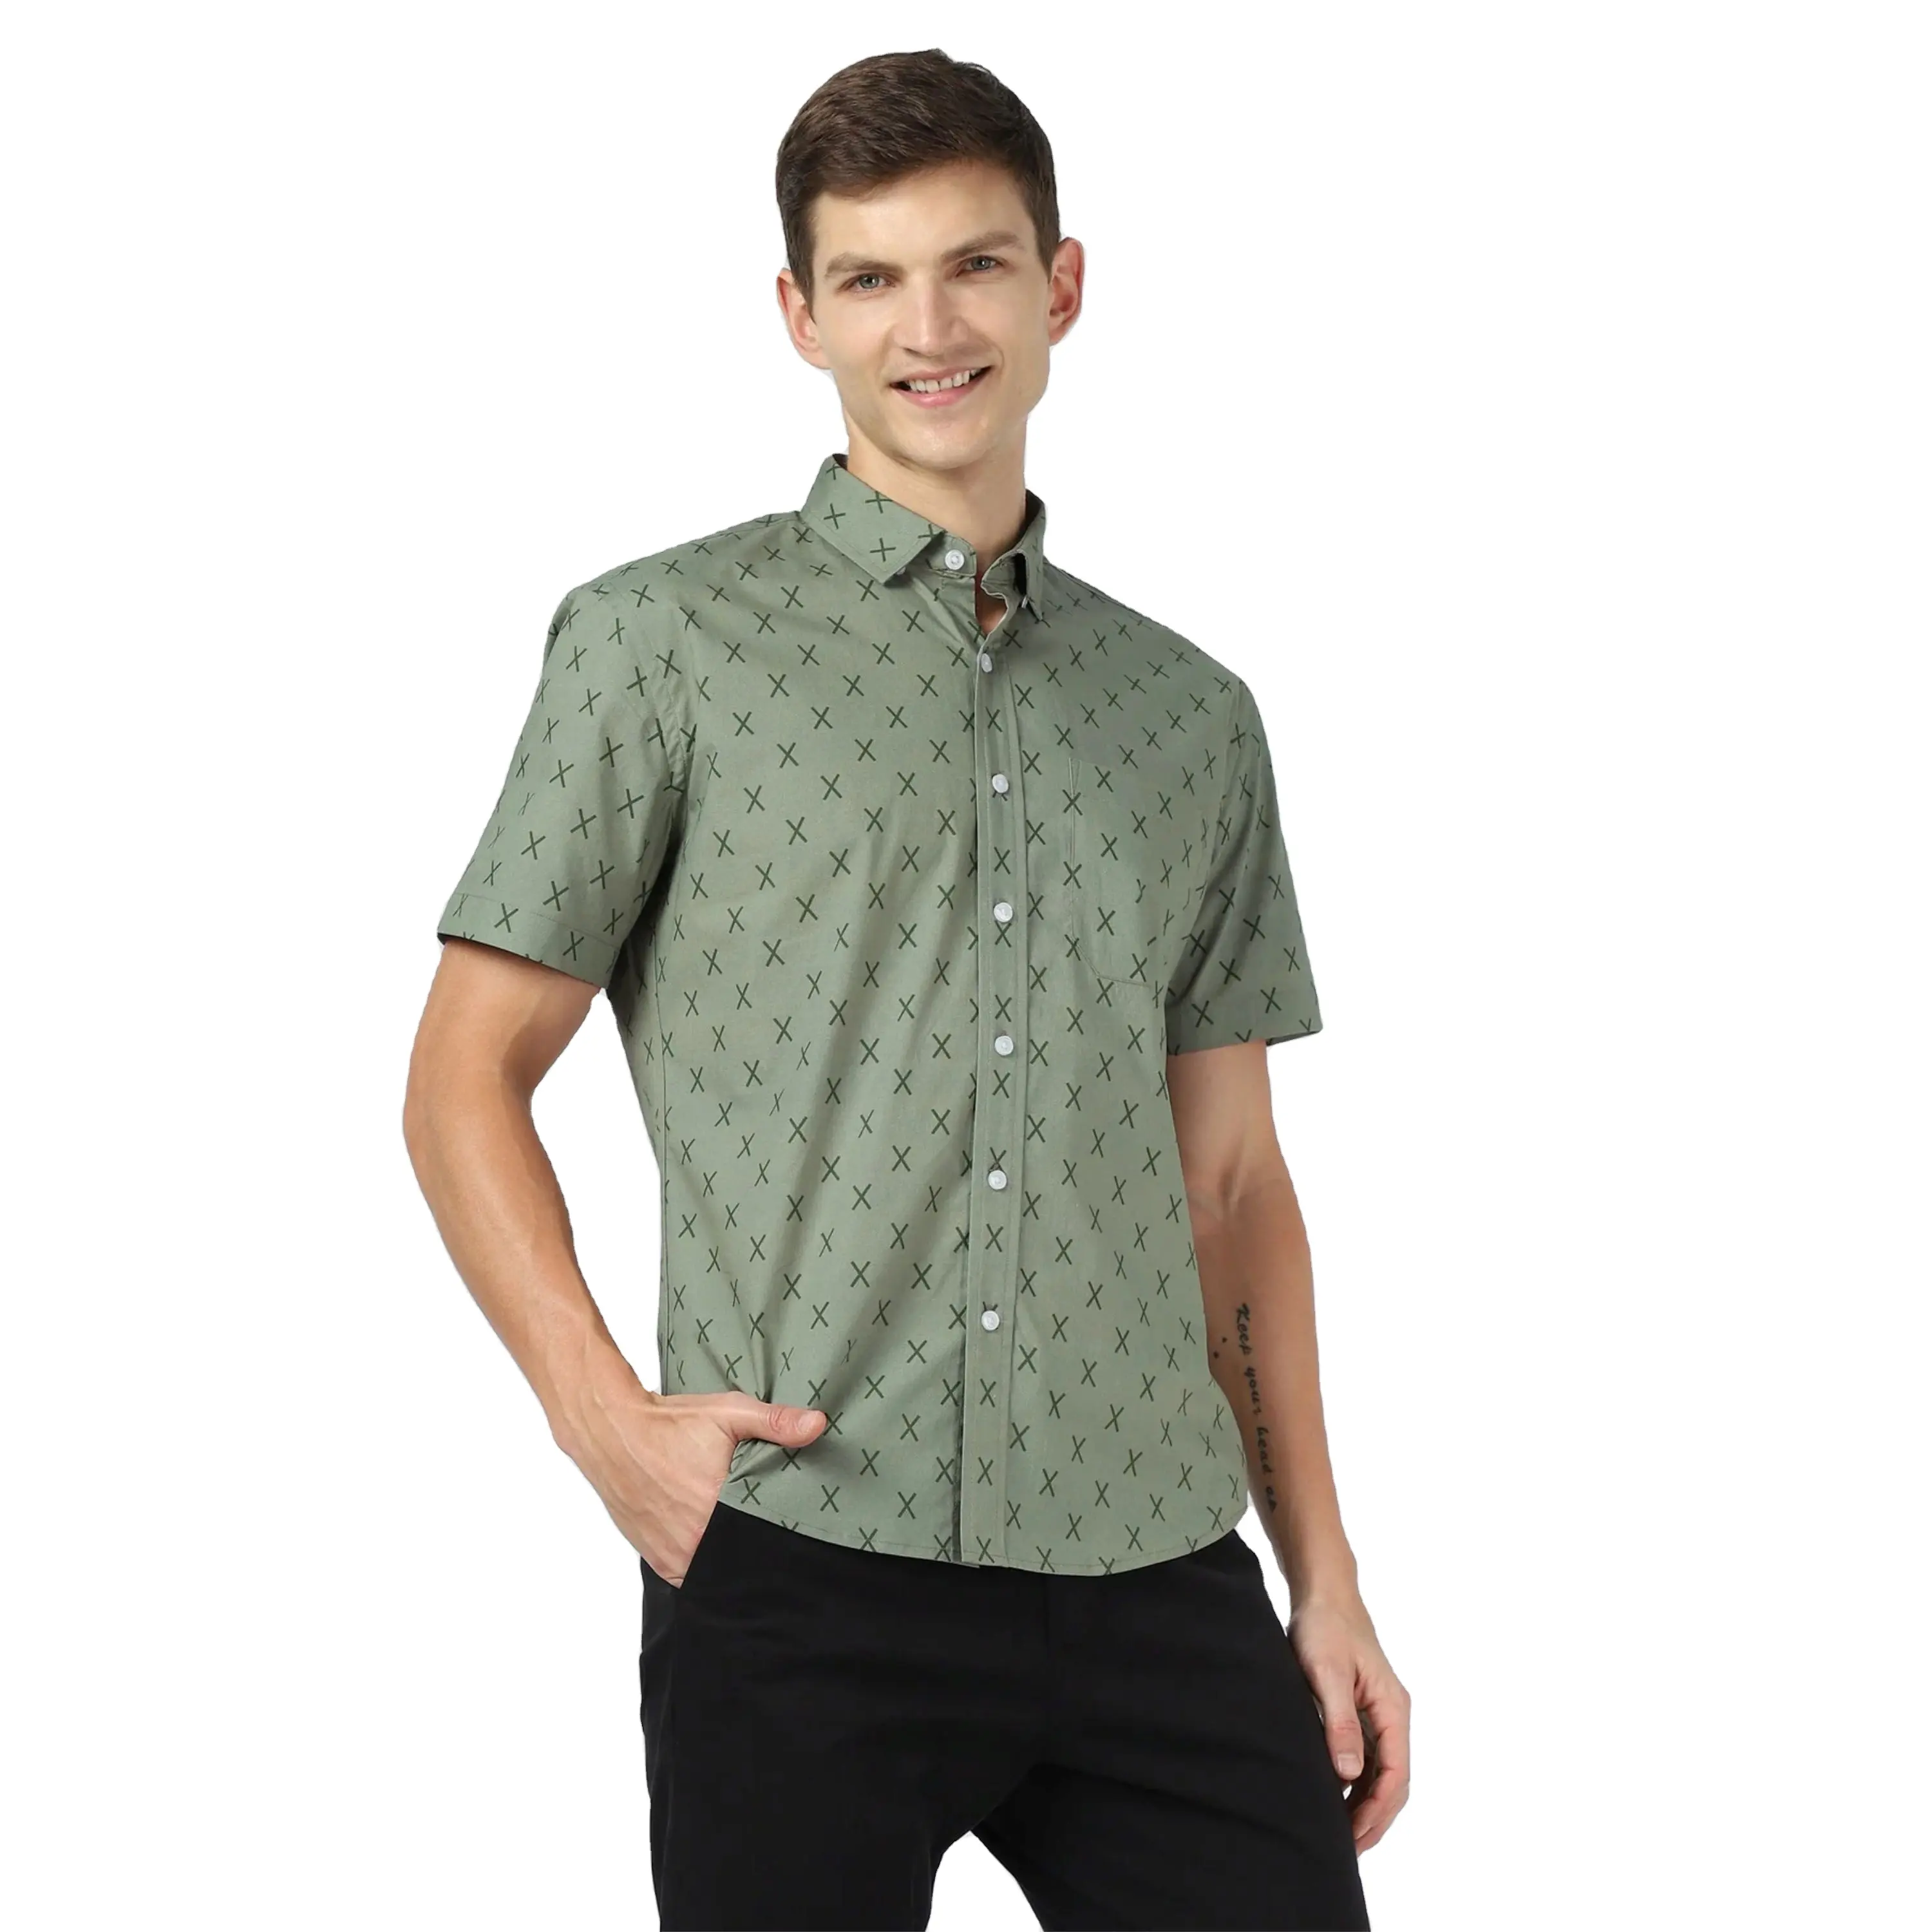 Классическая мужская пляжная рубашка на пуговицах-классный и удобный хлопок, идеально подходит для курортного отдыха и пляжных мероприятий